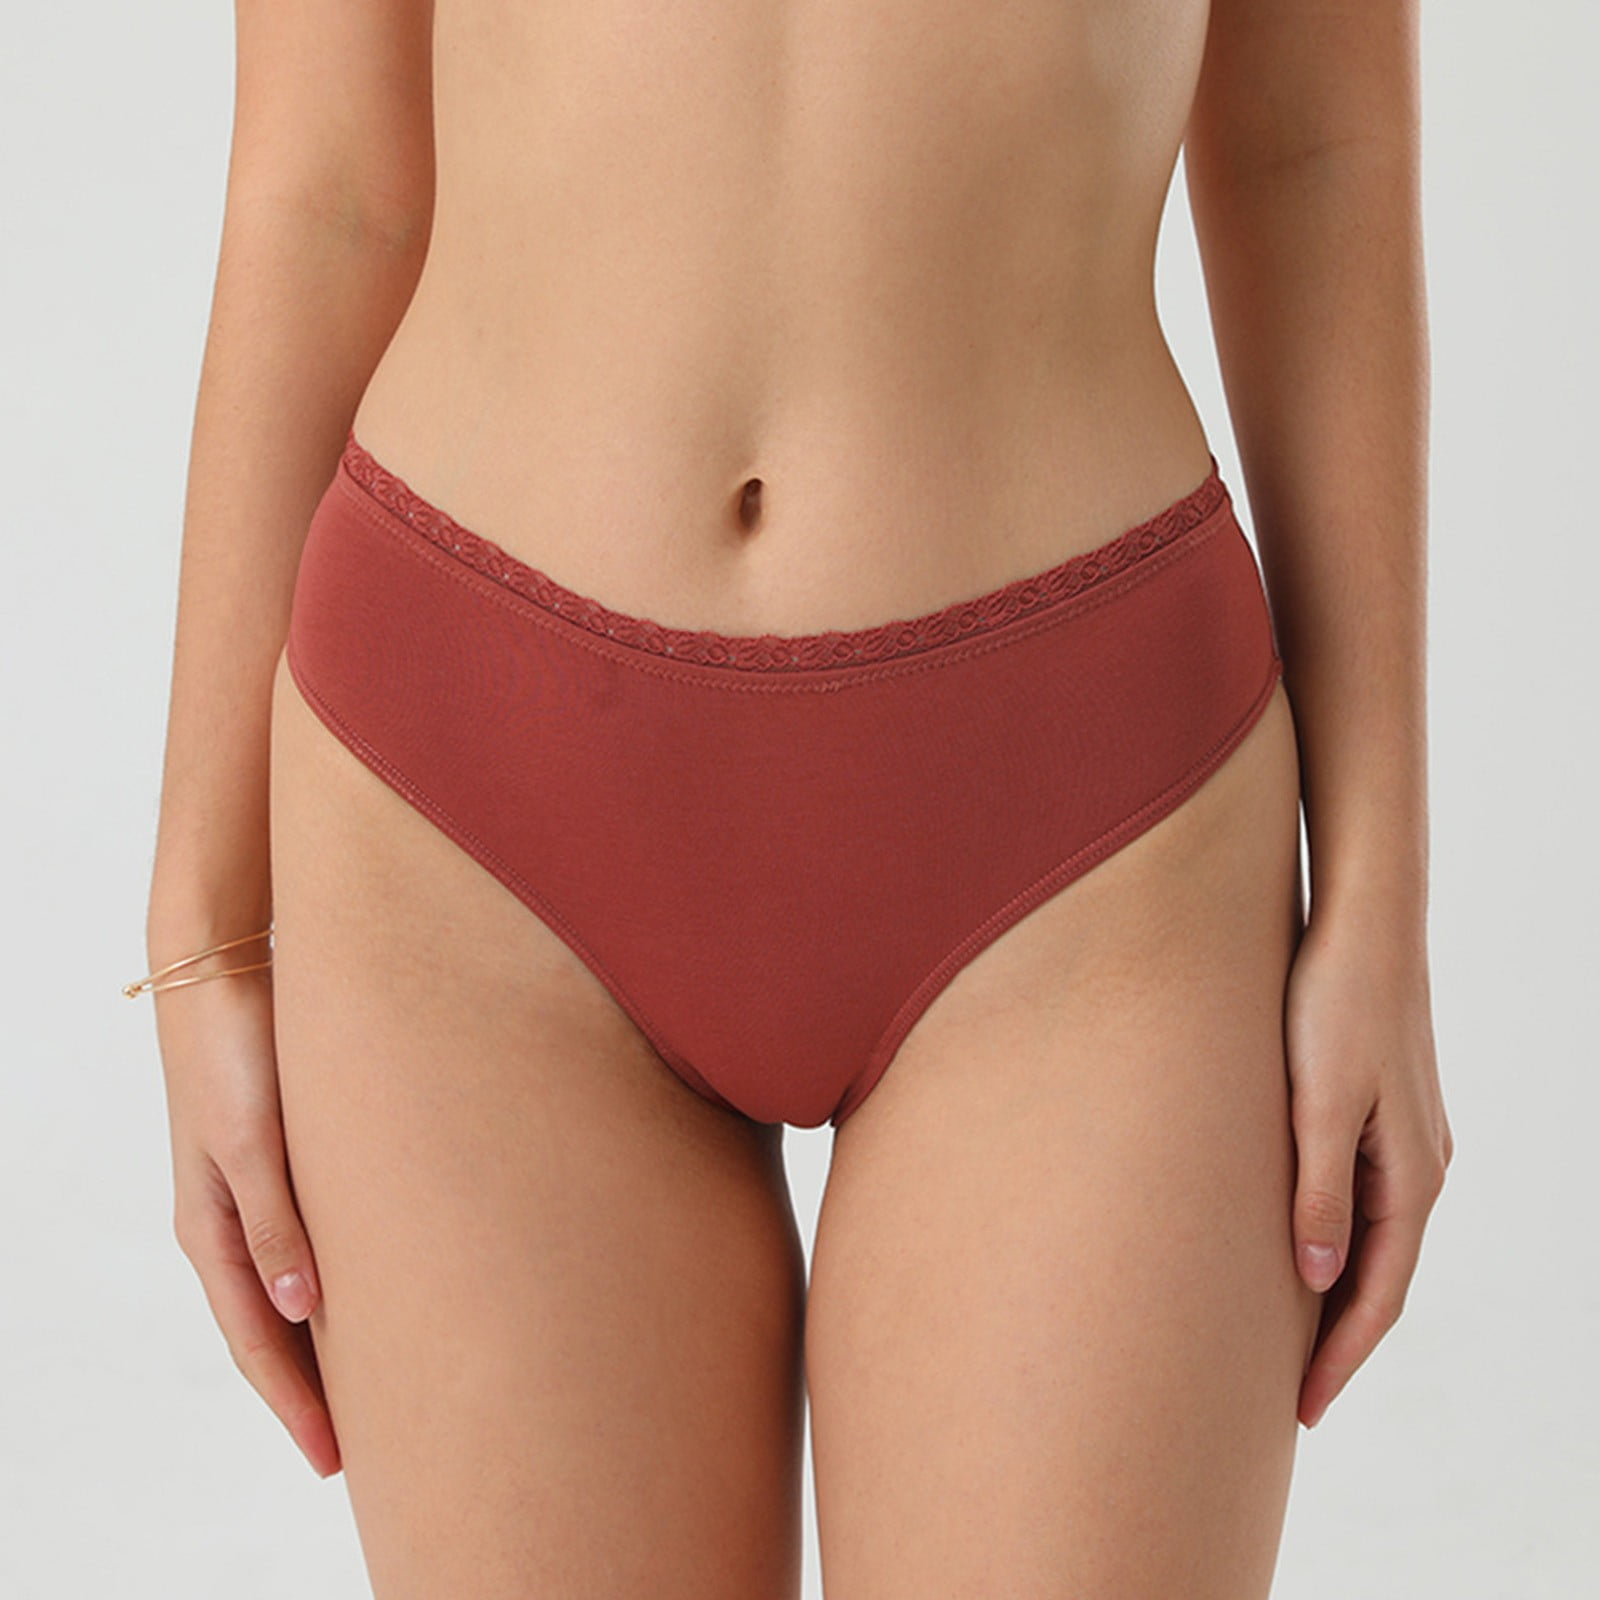 Gubotare Women Underpants Briefs Women's Underwear Hollow Out Transparent  Panties String Seamless Briefs Tanga,Red XXL 